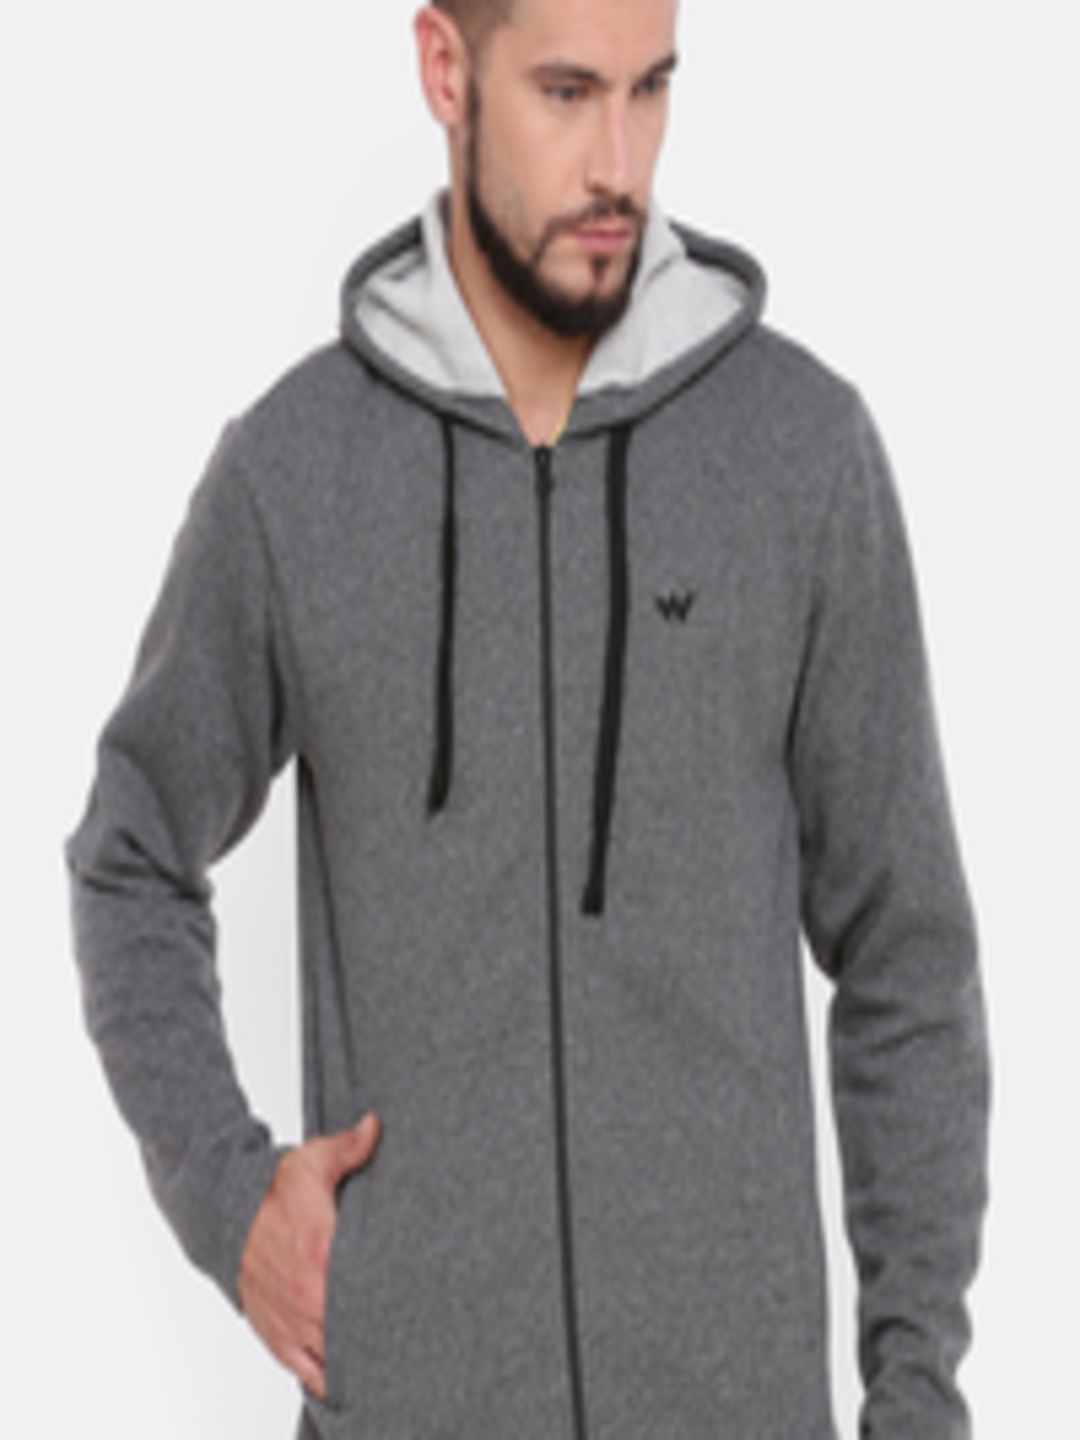 Buy Wildcraft Men Charcoal Grey Solid Hooded Zipper Sweatshirt ...